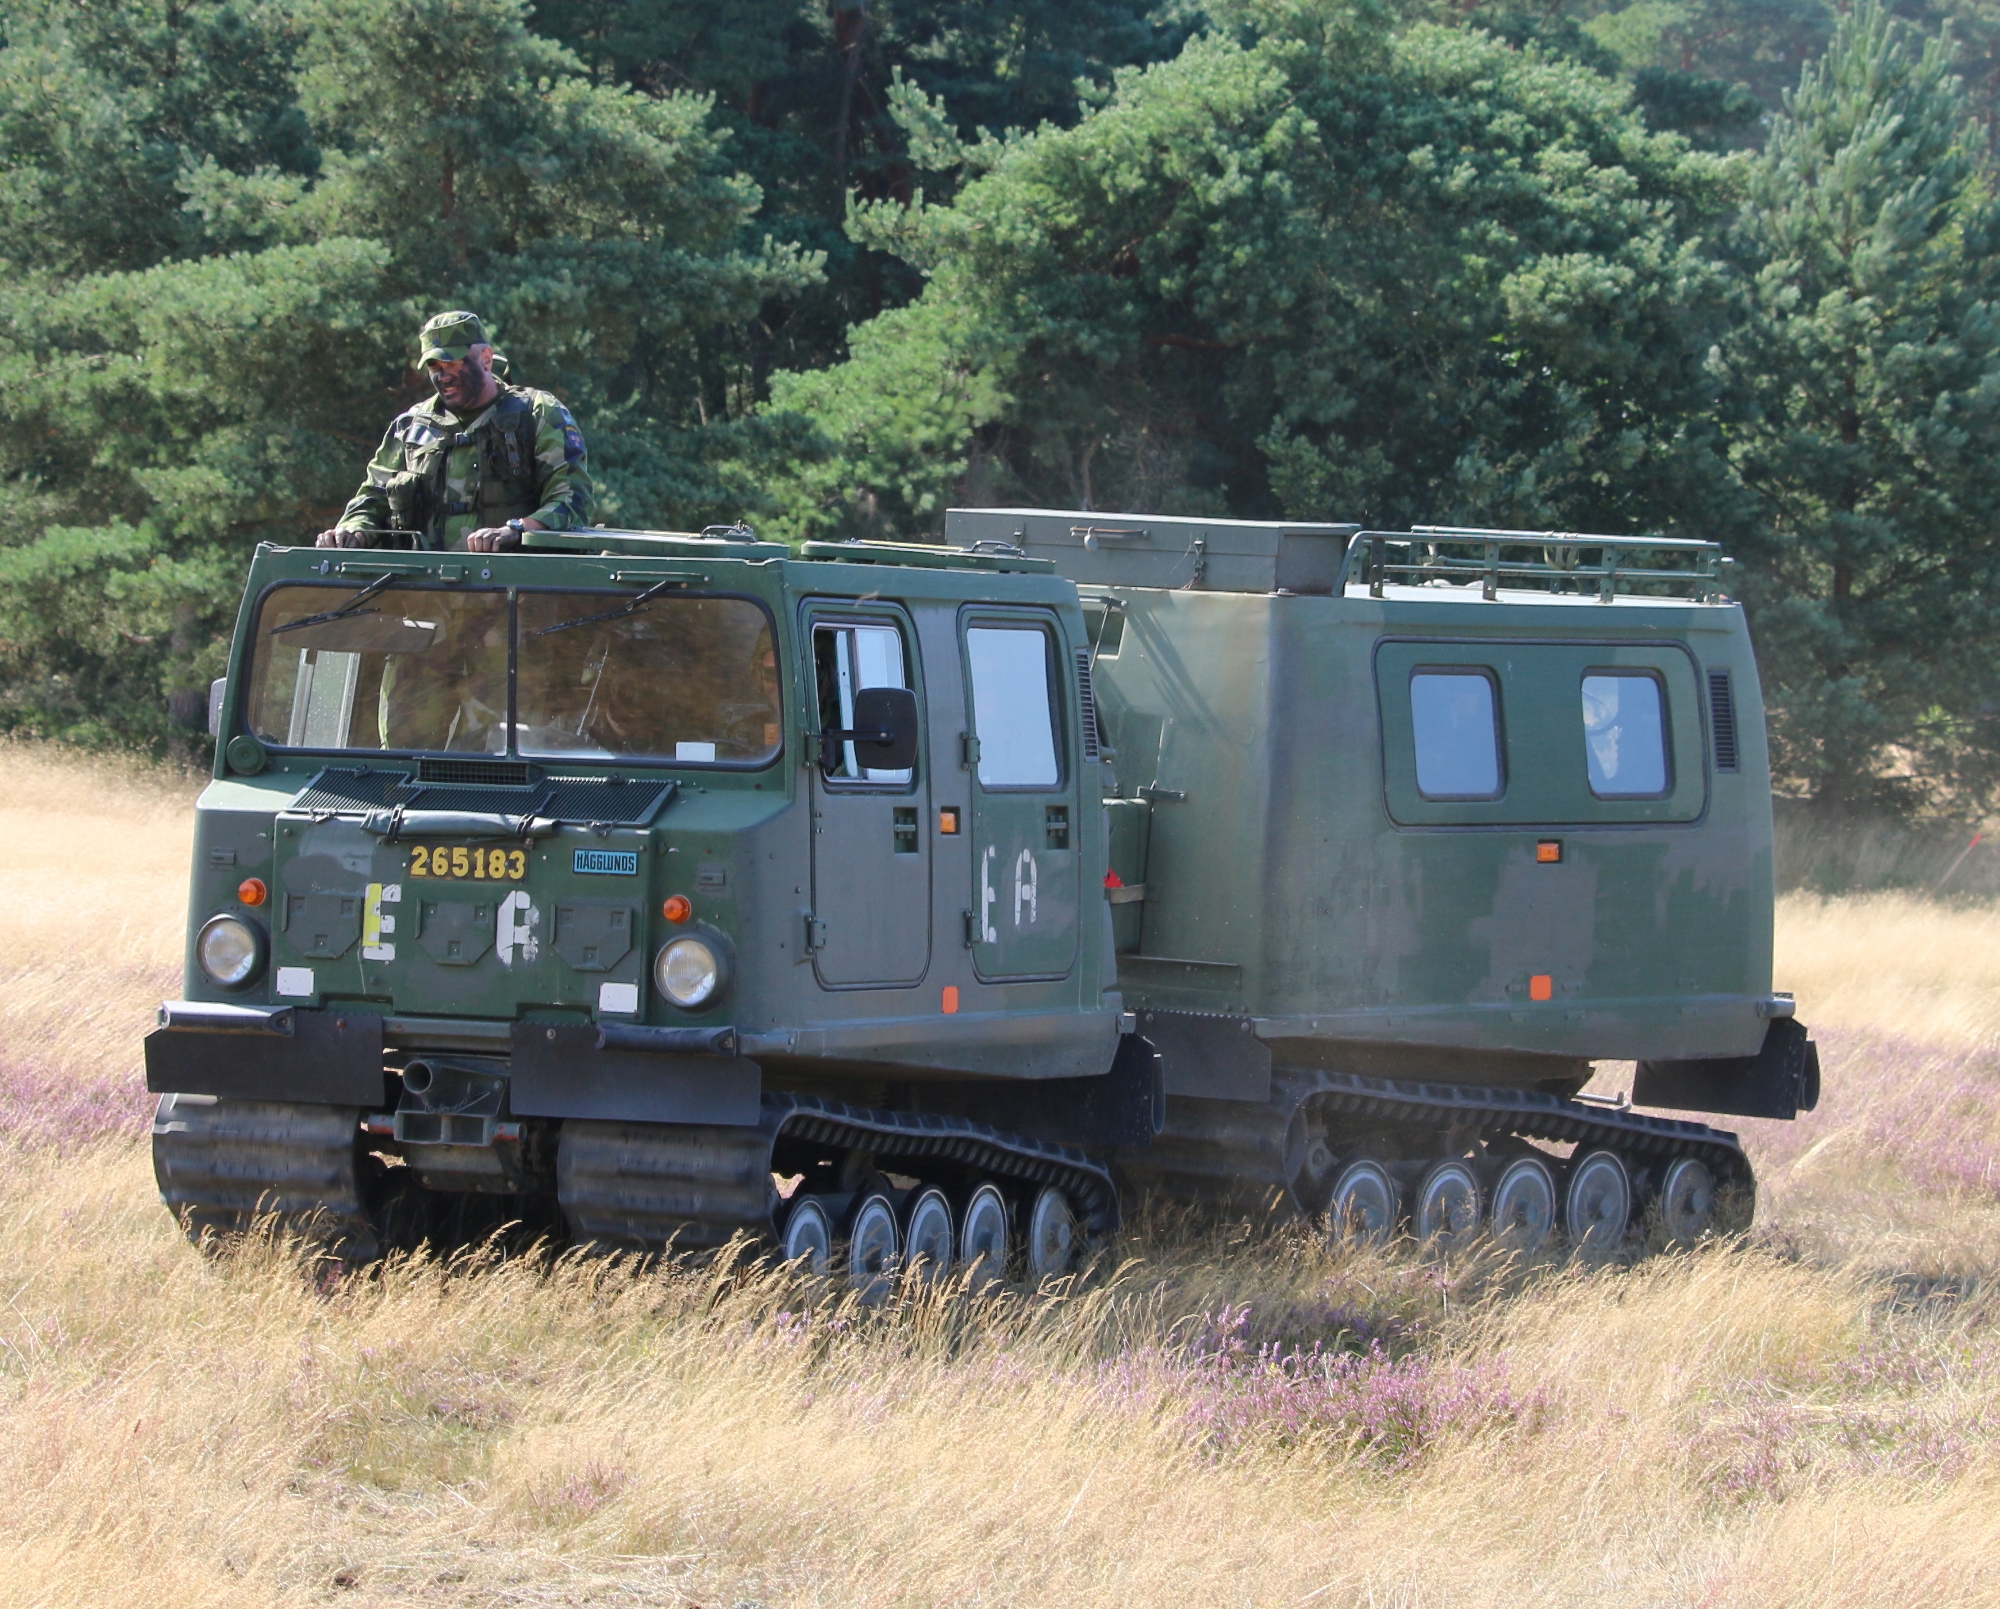 Radiotelefony Leopard, opancerzone pojazdy terenowe Bandvagn 206 i pojazdy przeciwminowe WISINT 1: Niemcy przekazują Ukrainie nowy pakiet uzbrojenia